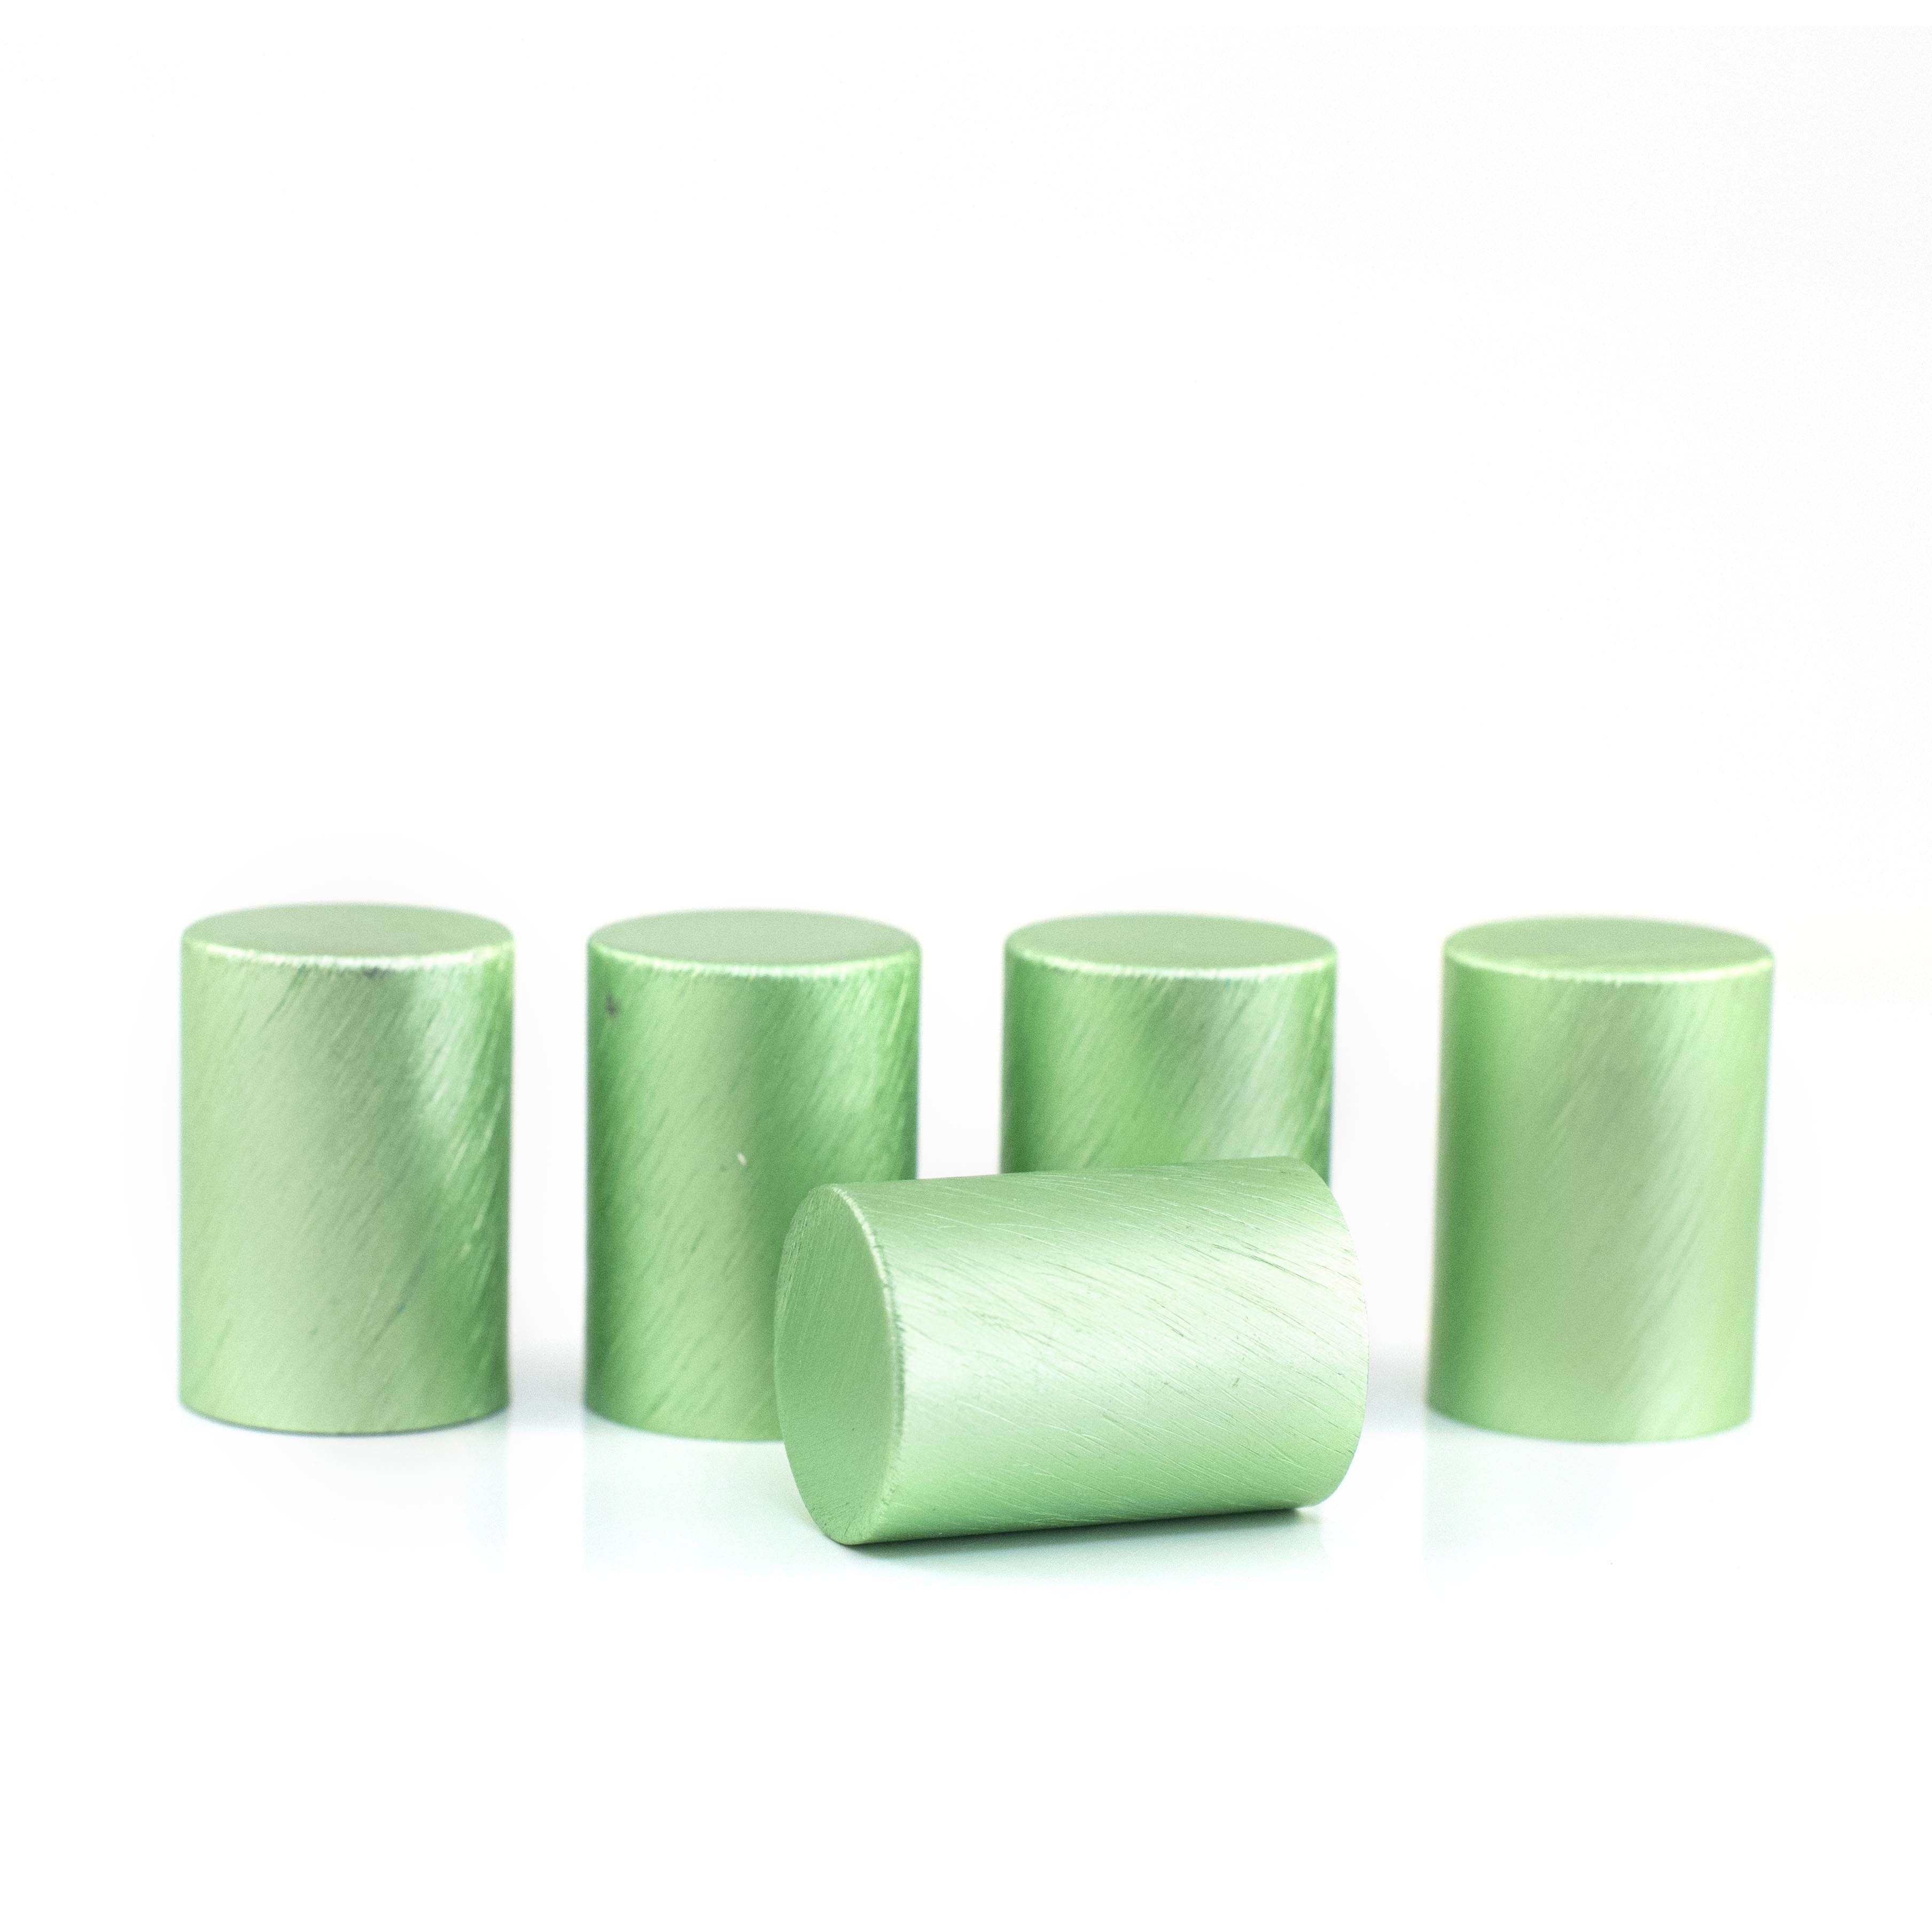 Fém kupakok (5 darab) Roll-on üveghengerhez, Zöld színben